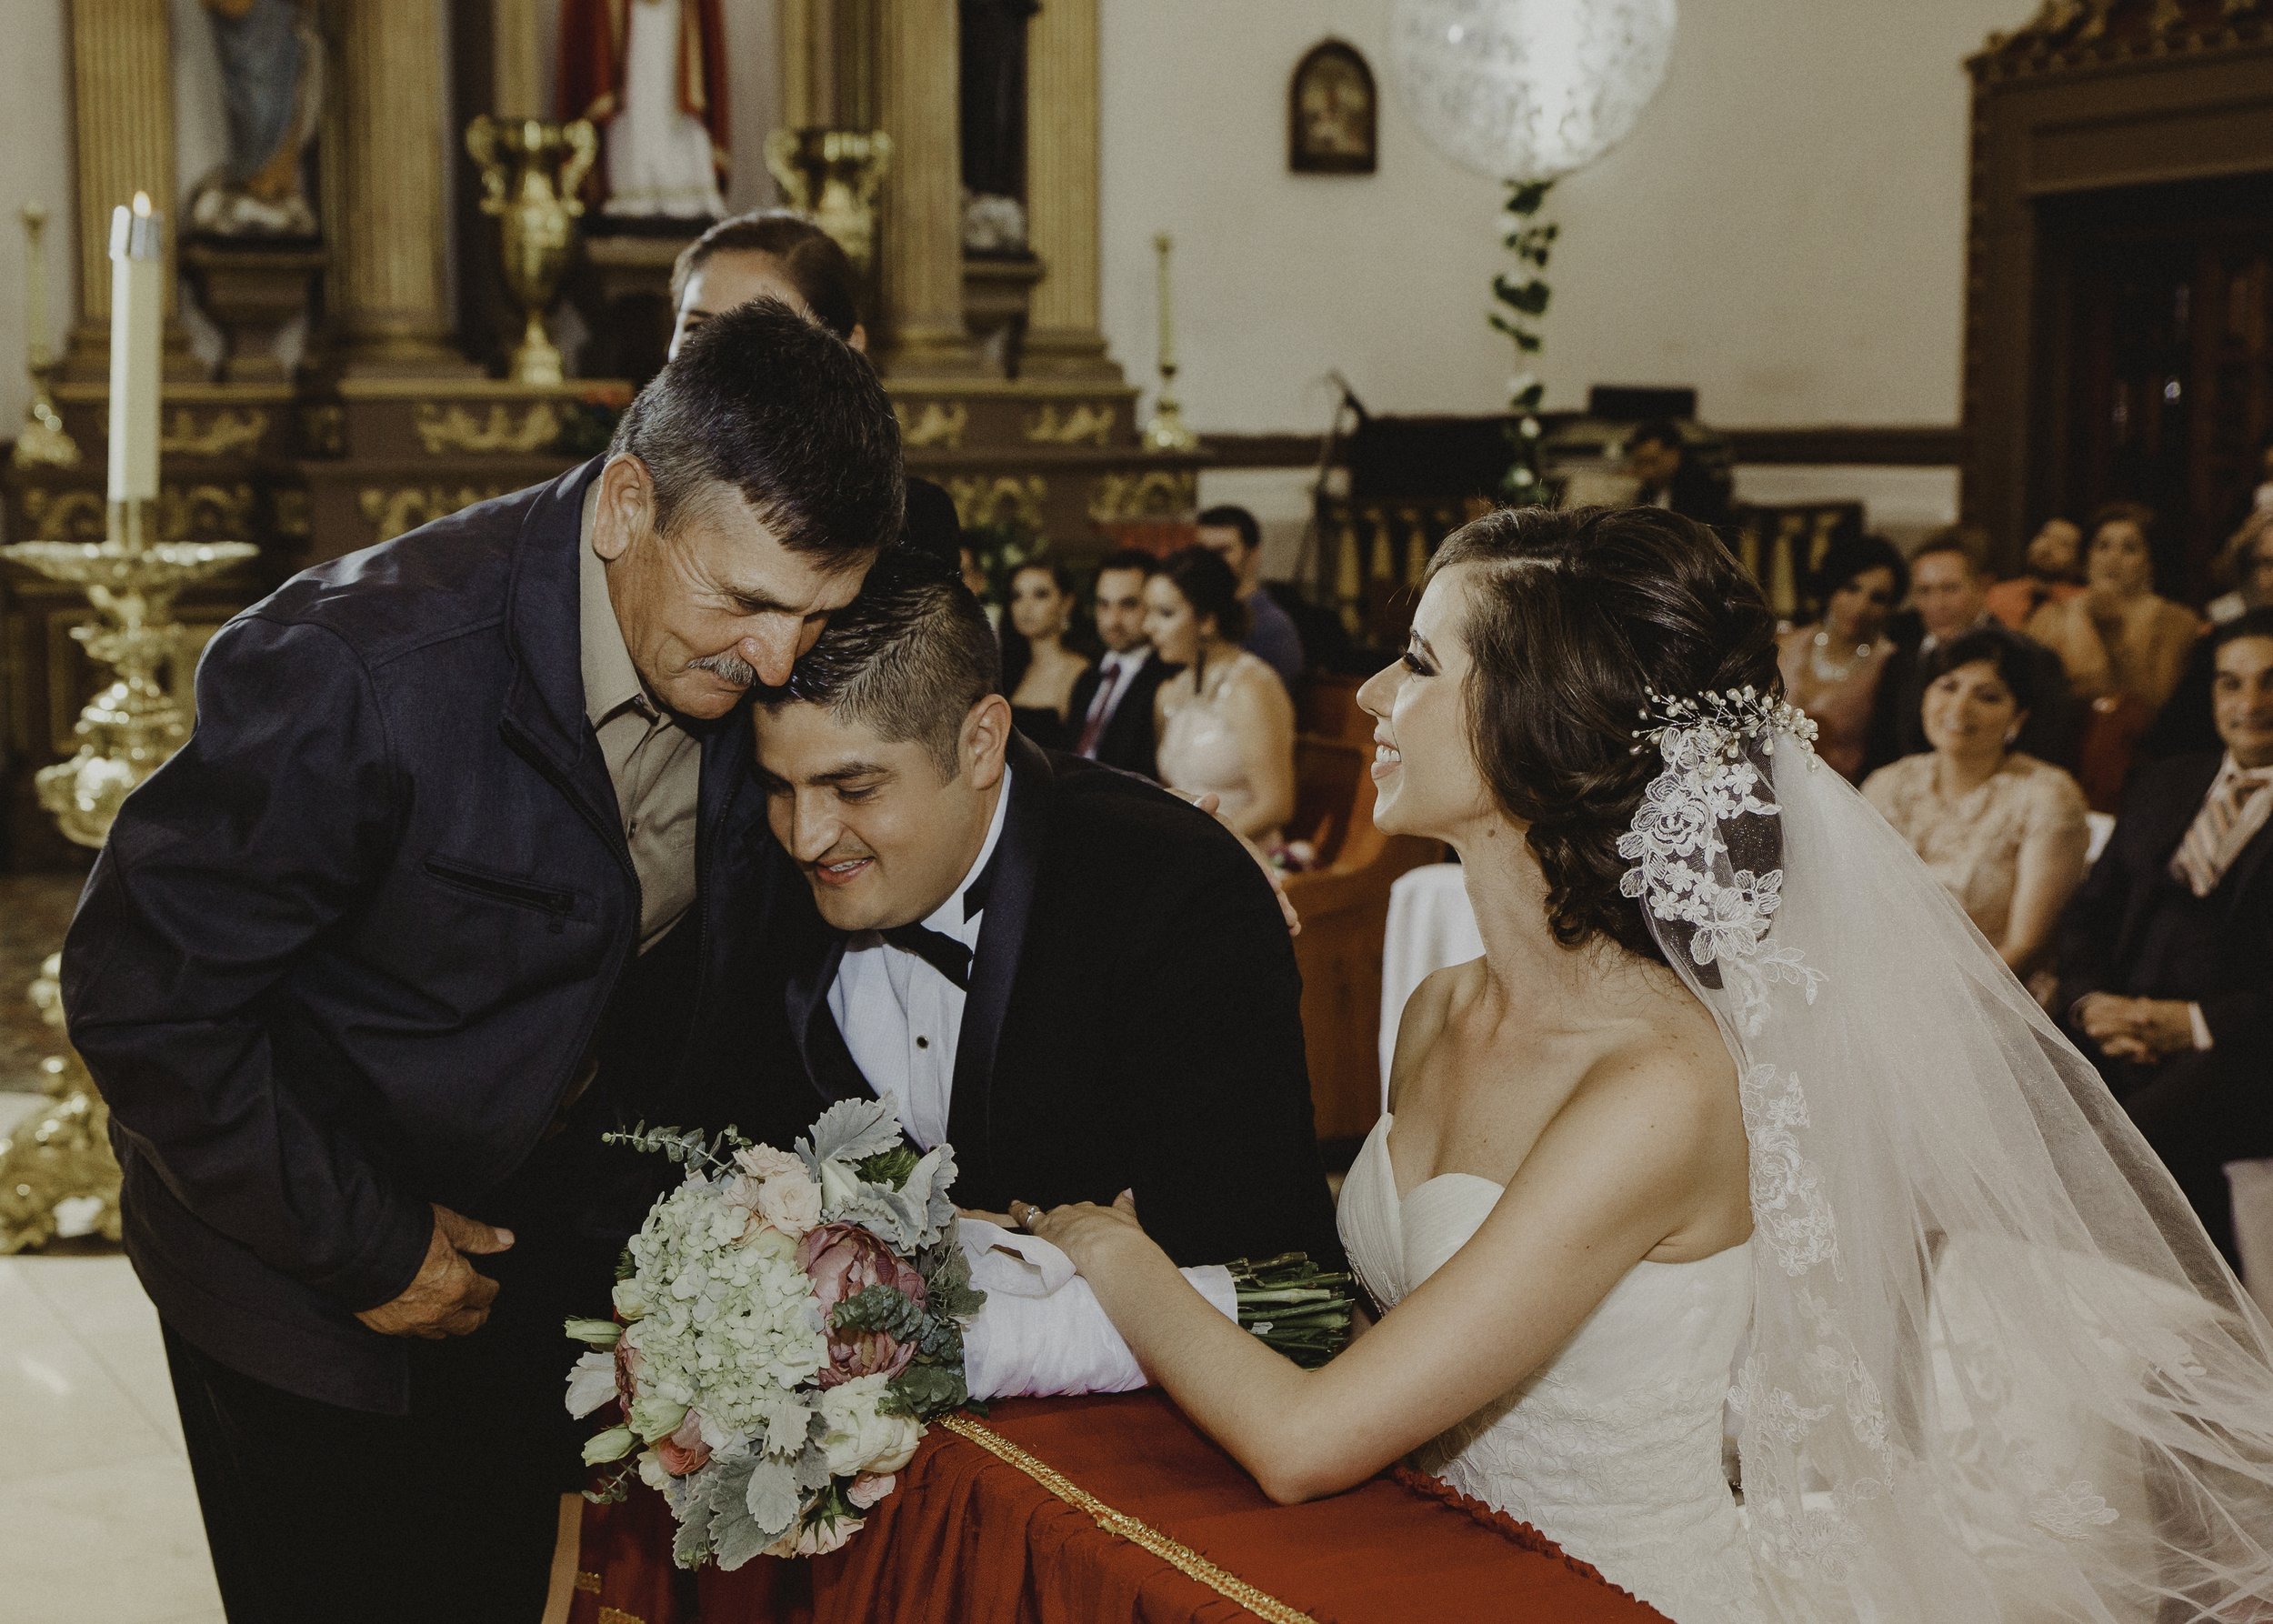 Fotografo-de-bodas-destino-Mexico-wedding-destination-photographer-san-miguel-de-allende-guanajuato-queretaro-boho-bohemian-bohemio-chic-editorial-carotida-photographer-lago-michoacan-los-cabos